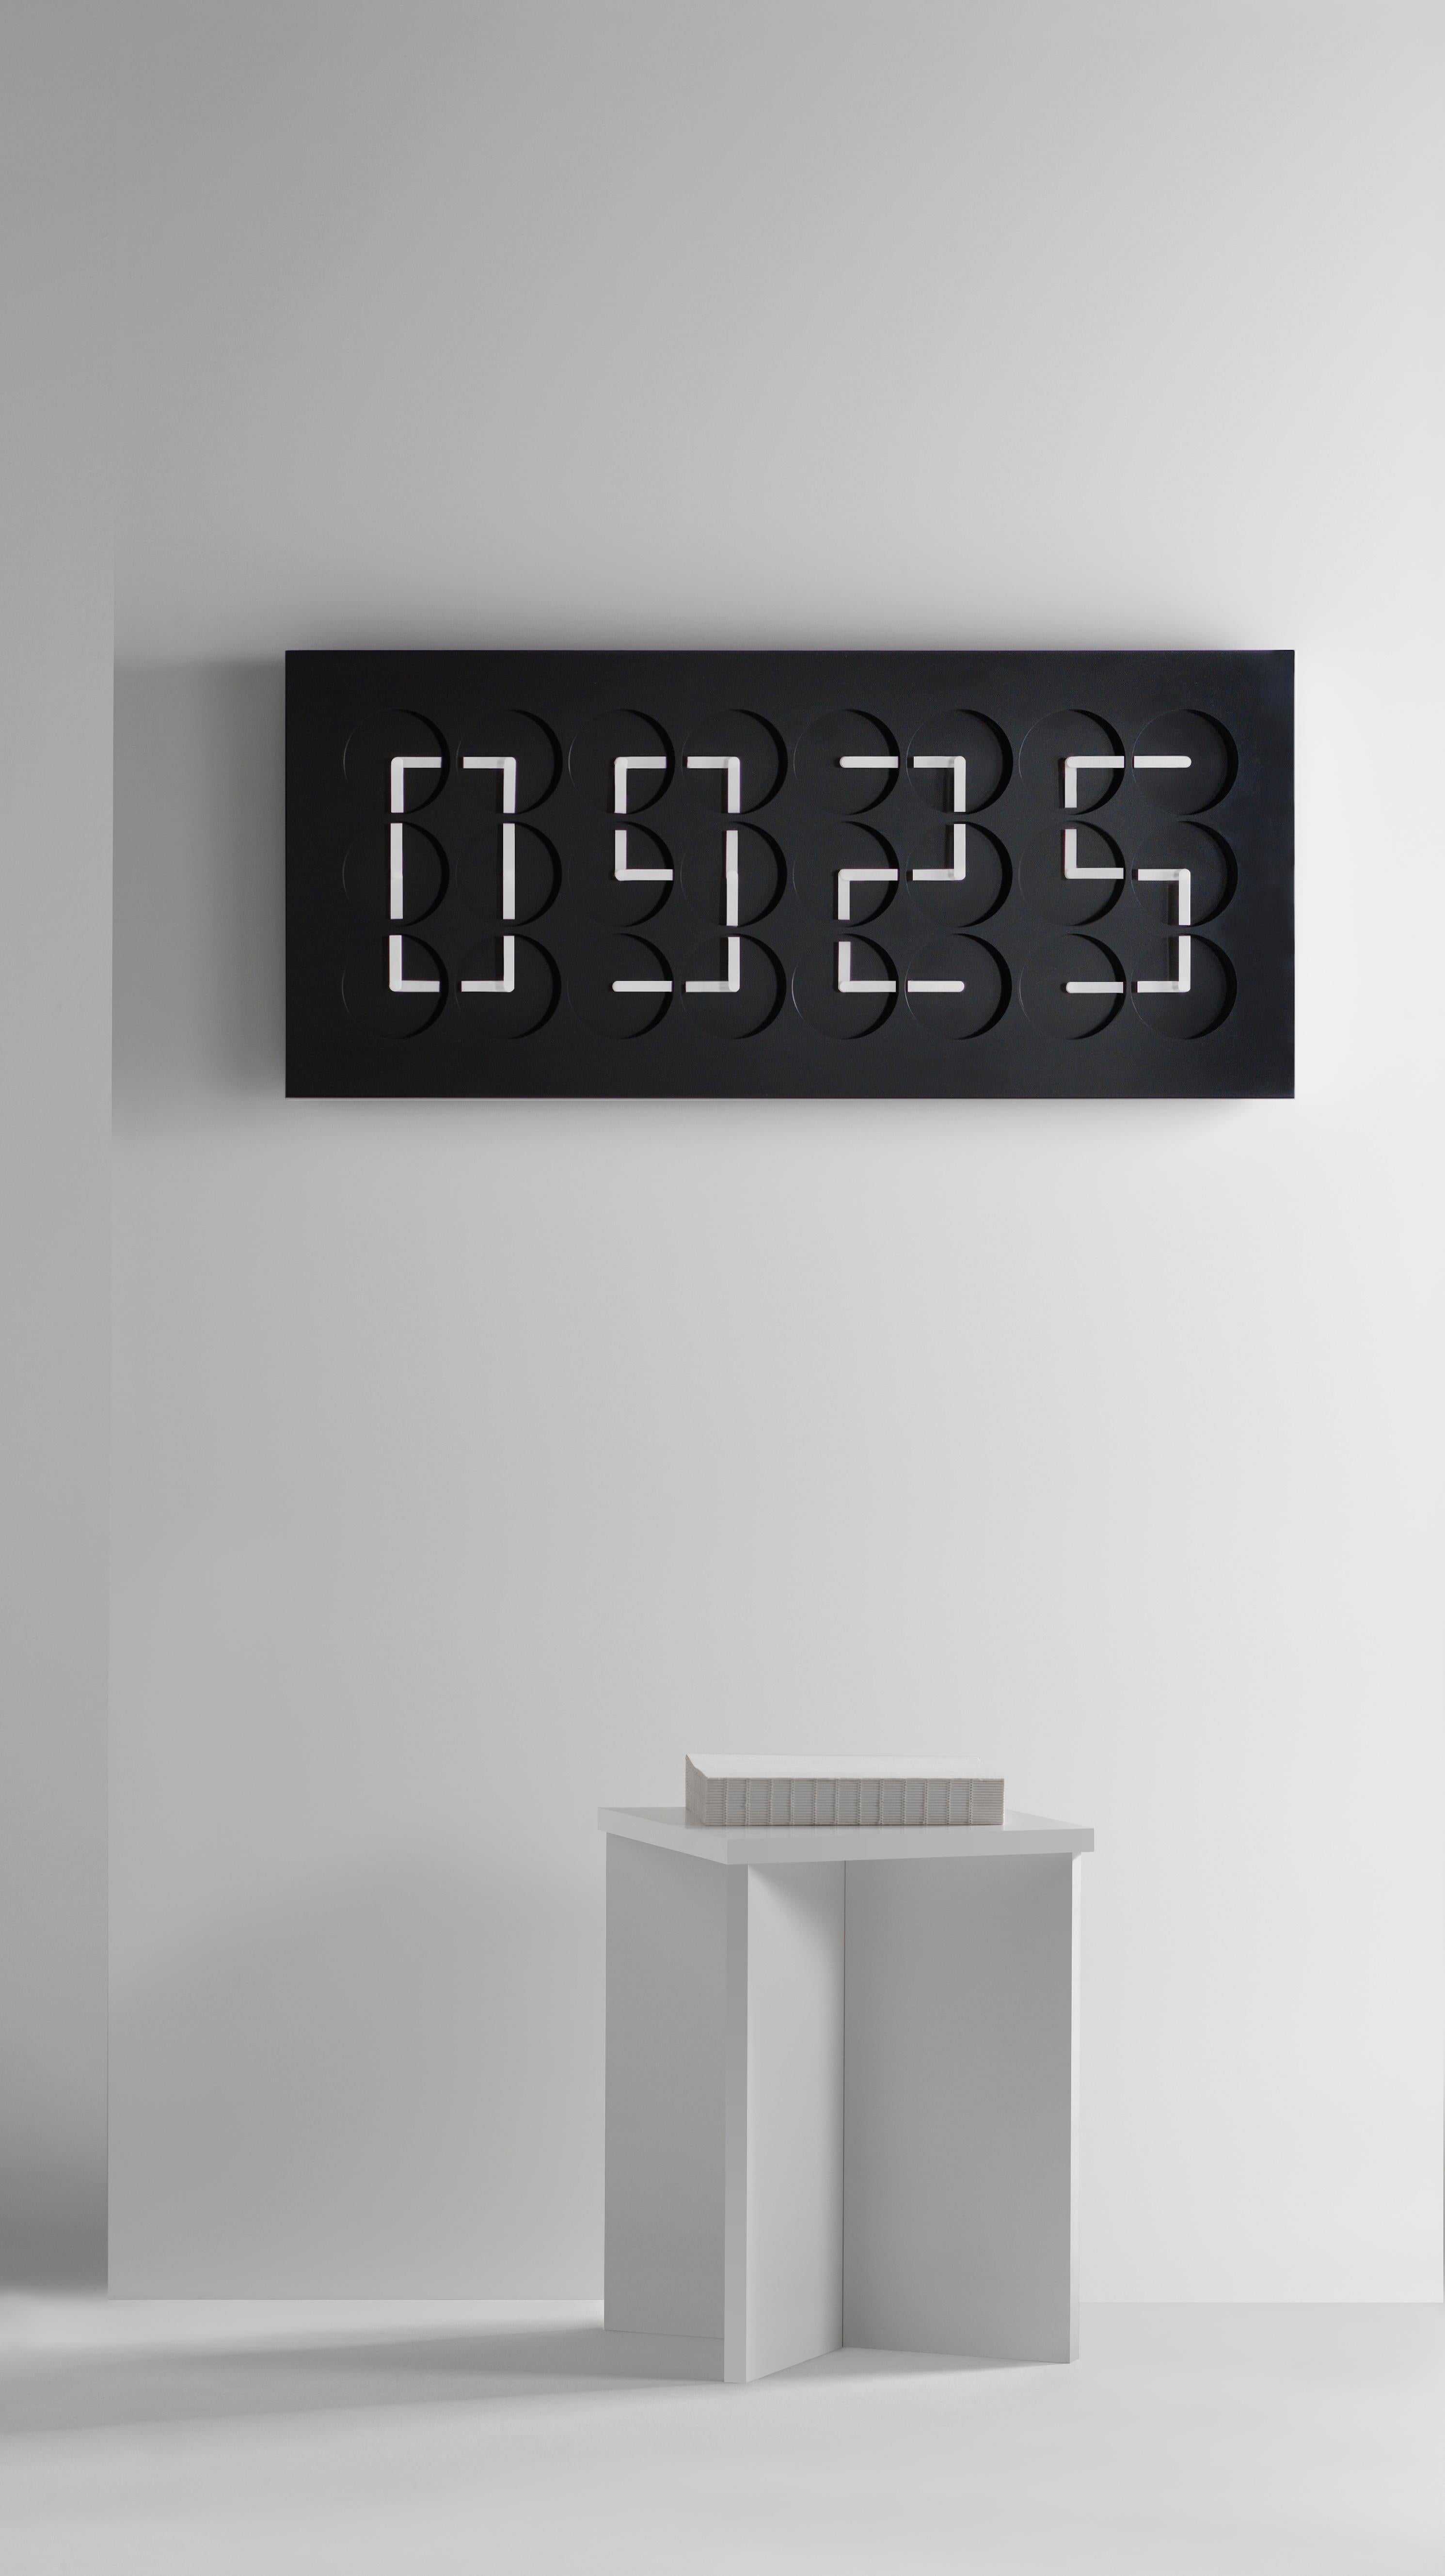 ClockClock 24 est à la fois une sculpture cinétique et une horloge murale fonctionnelle. Il s'agit d'une pièce de signature de Humans depuis 1982, depuis son lancement en 2016. Les aiguilles de l'horloge passent d'une rotation mécanique imprévisible